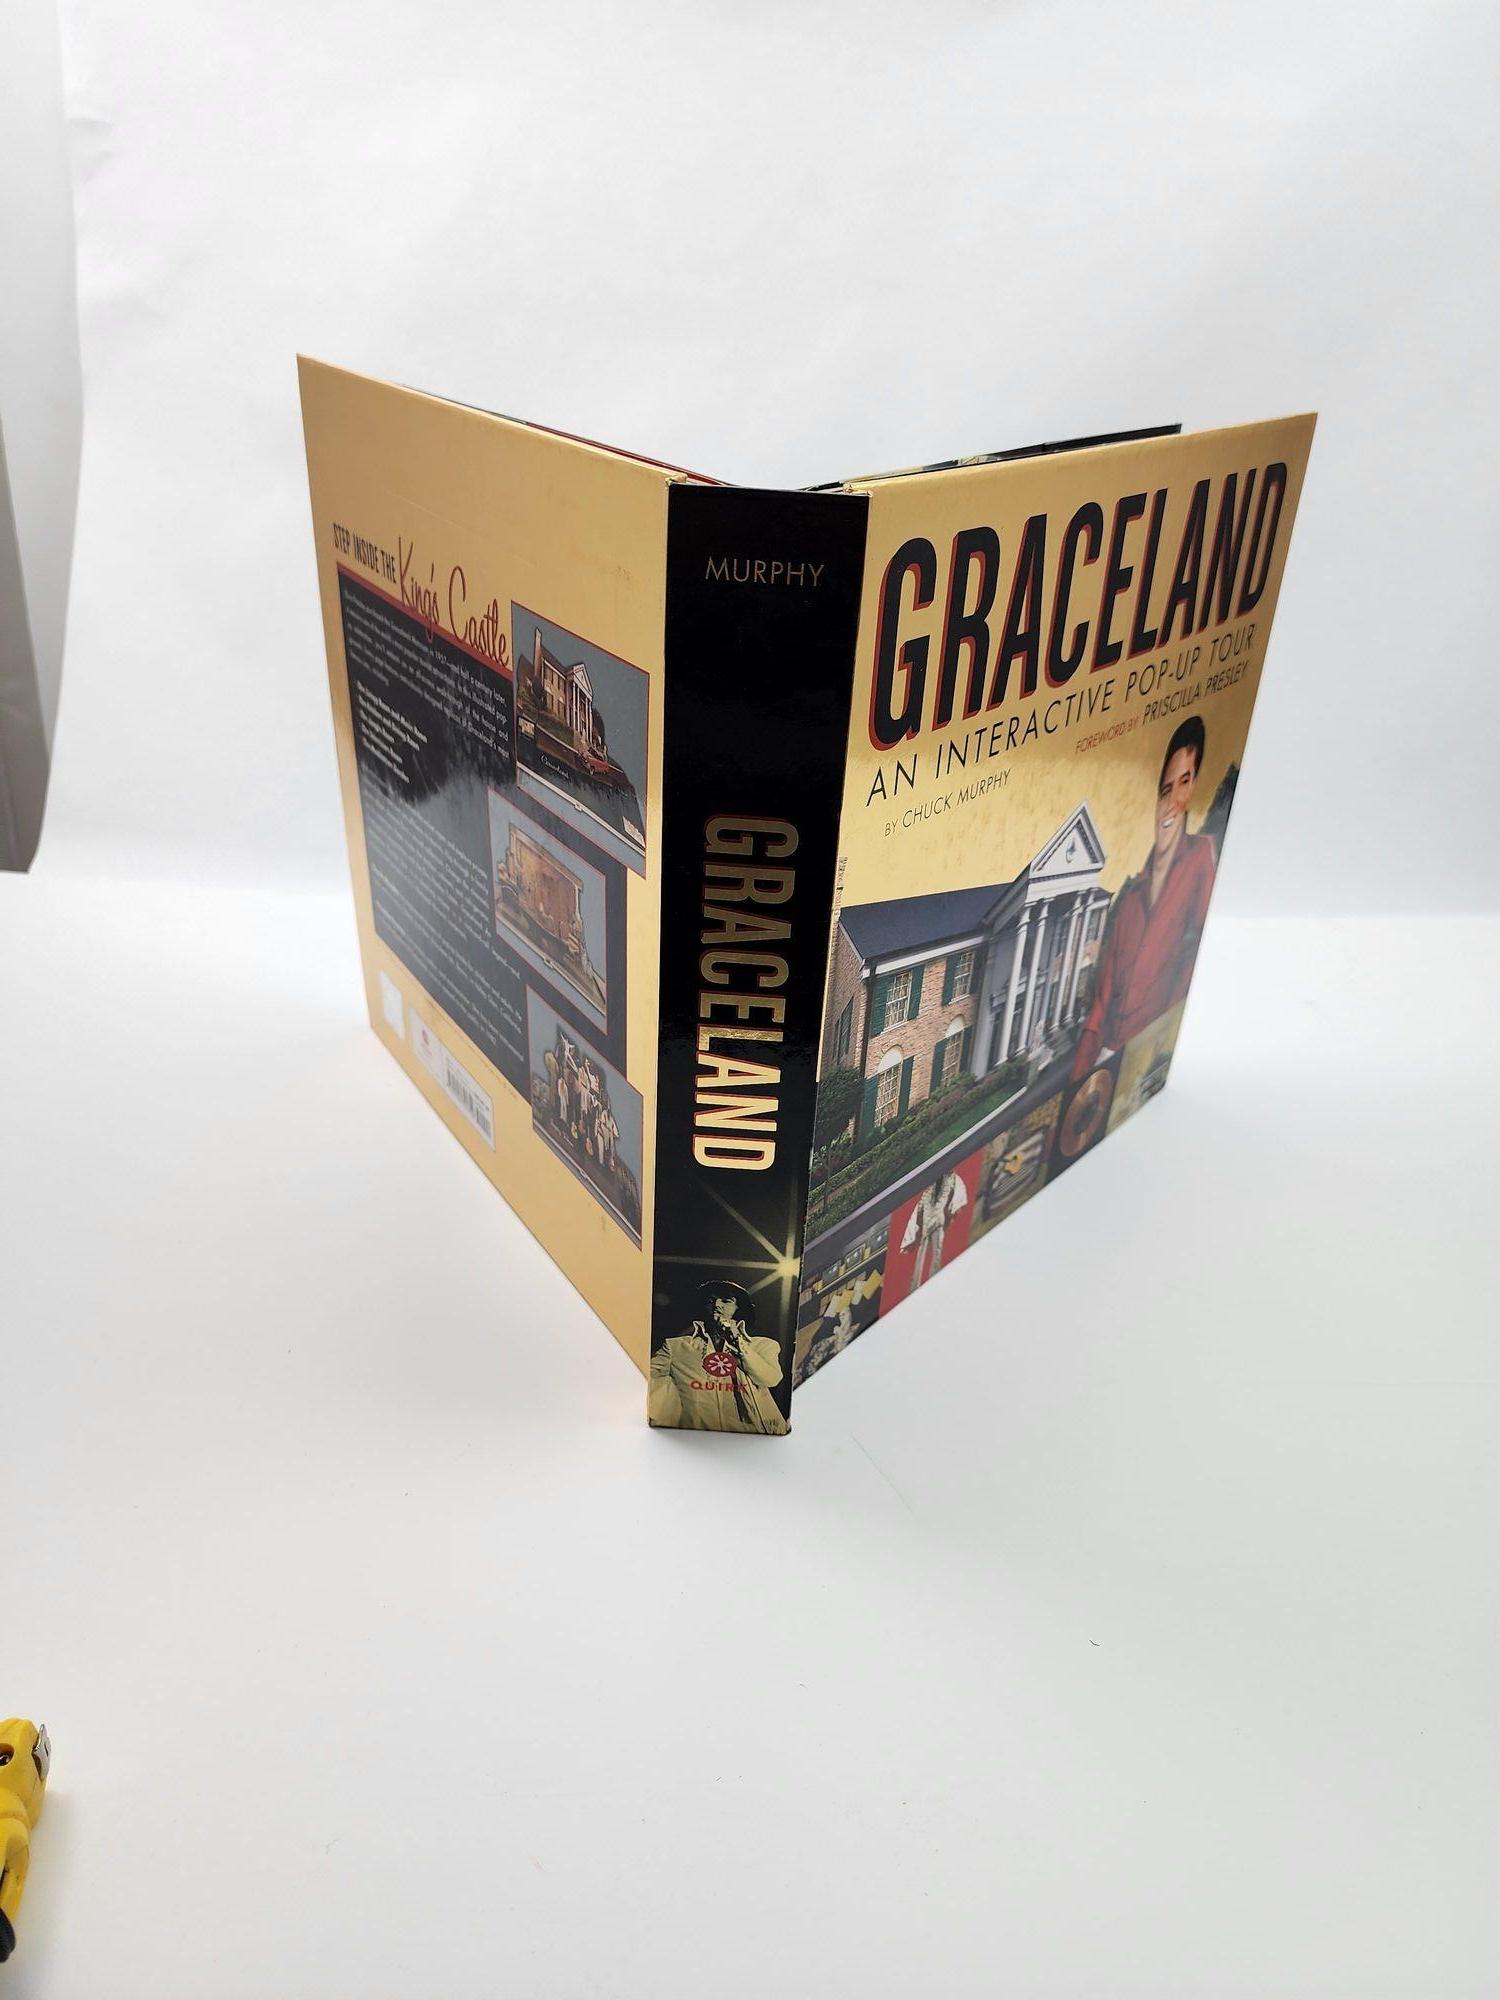 Graceland: Eine interaktive Pop-Up-Tour von Chuck Murphy (2006-10-26) - Vorwort von Priscilla Presley.Interaktives Hardcover-Buch.
Mehr als 600.000 Menschen besuchen Graceland jährlich und machen es damit zu einem der beliebtesten Reiseziele in den